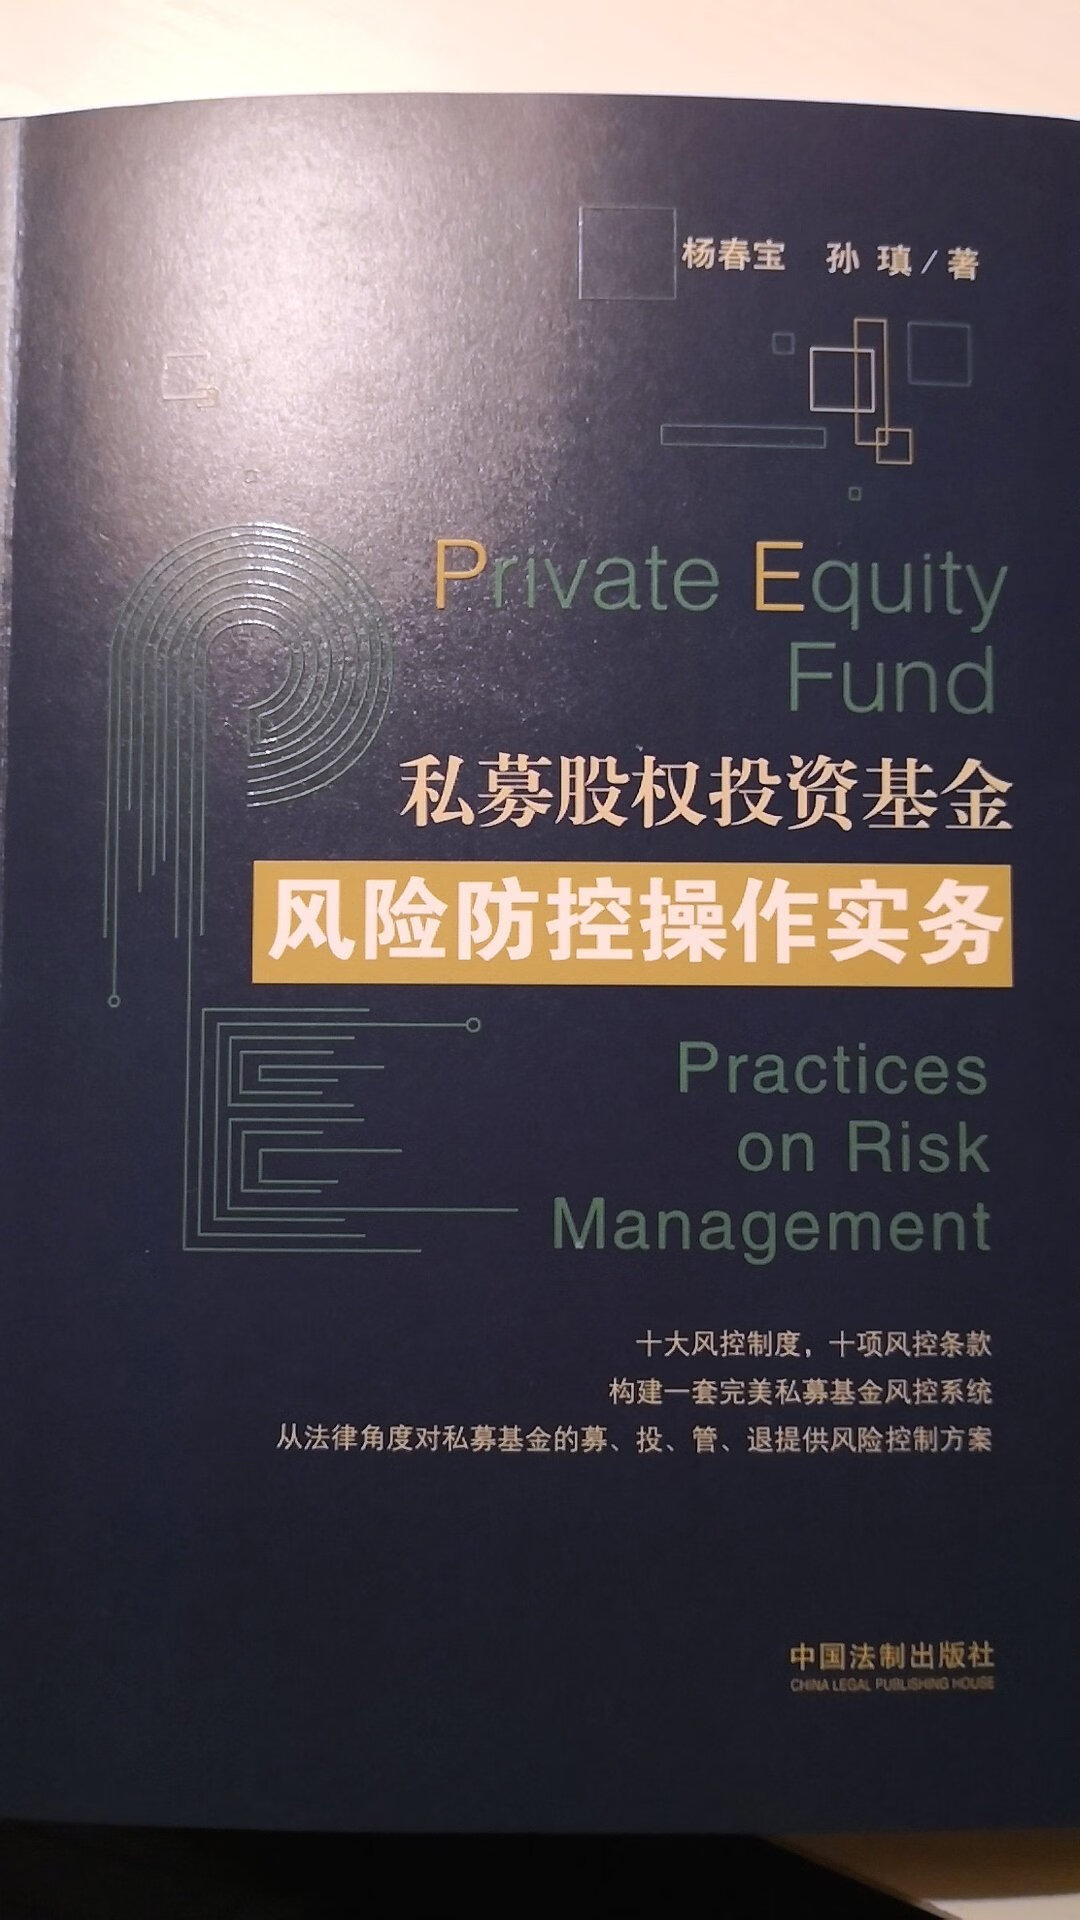 介绍了私募股权投资基金的主要风险防范措施，主要是针对法律层面的，值得应用中加以借鉴和参考